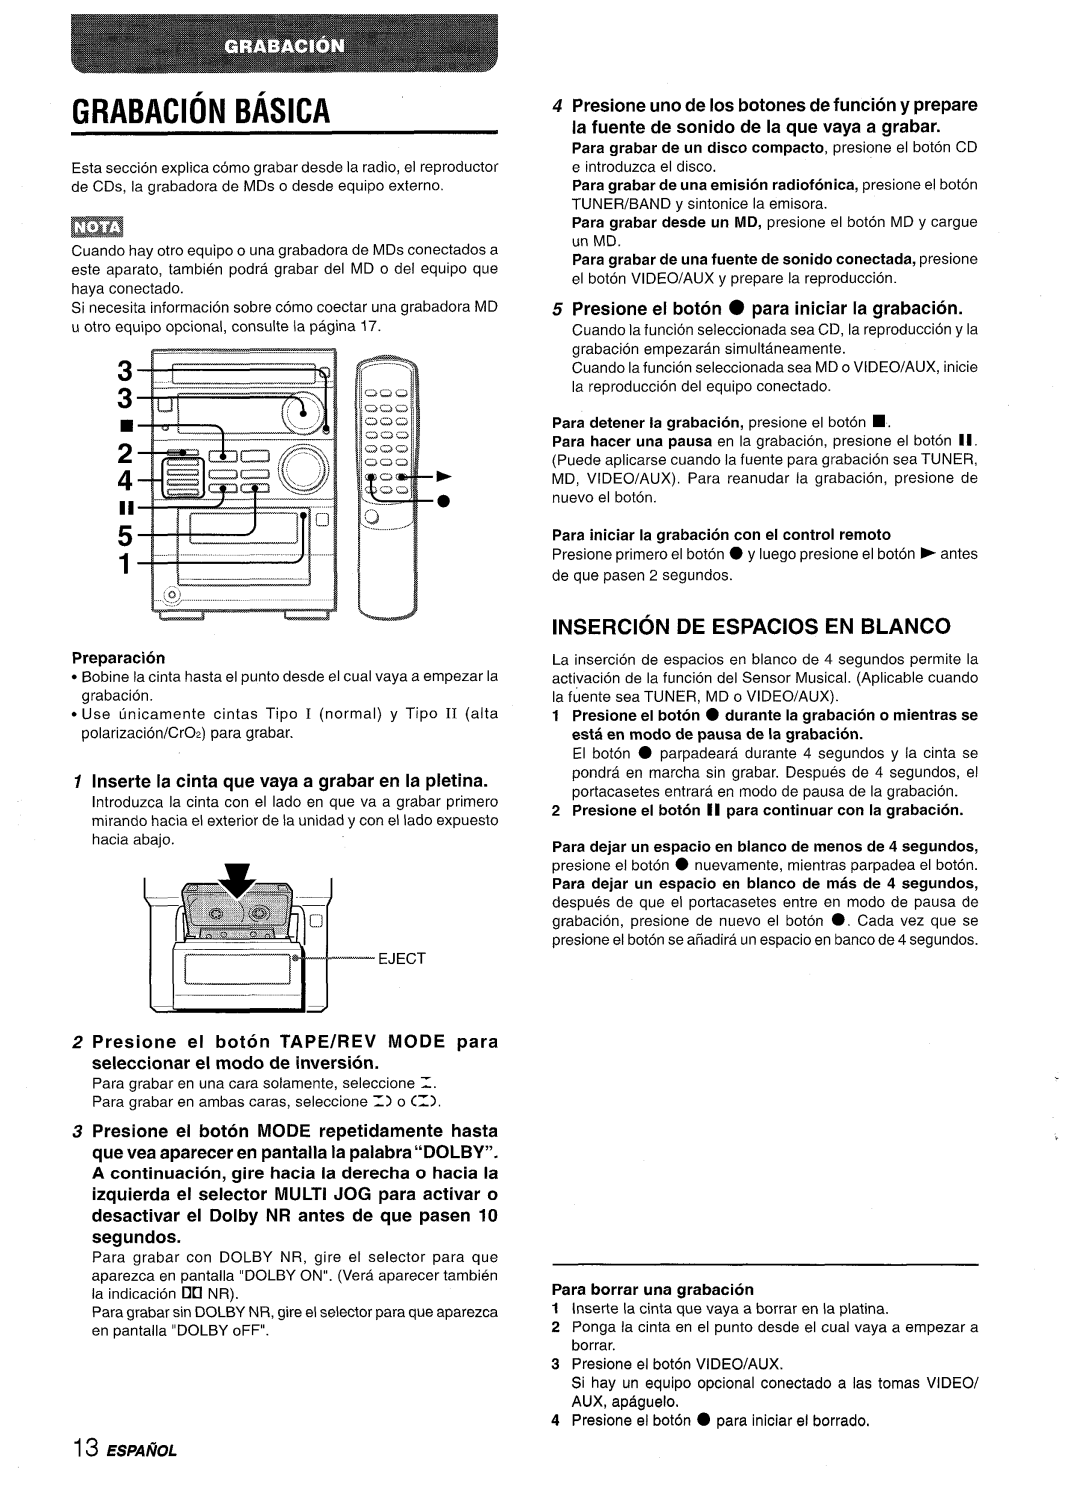 Aiwa XR-M35 manual Grabacion Basica, Insercion De Espacios En Blanco, Inserte la cinta que vaya a grabar en la pletina 